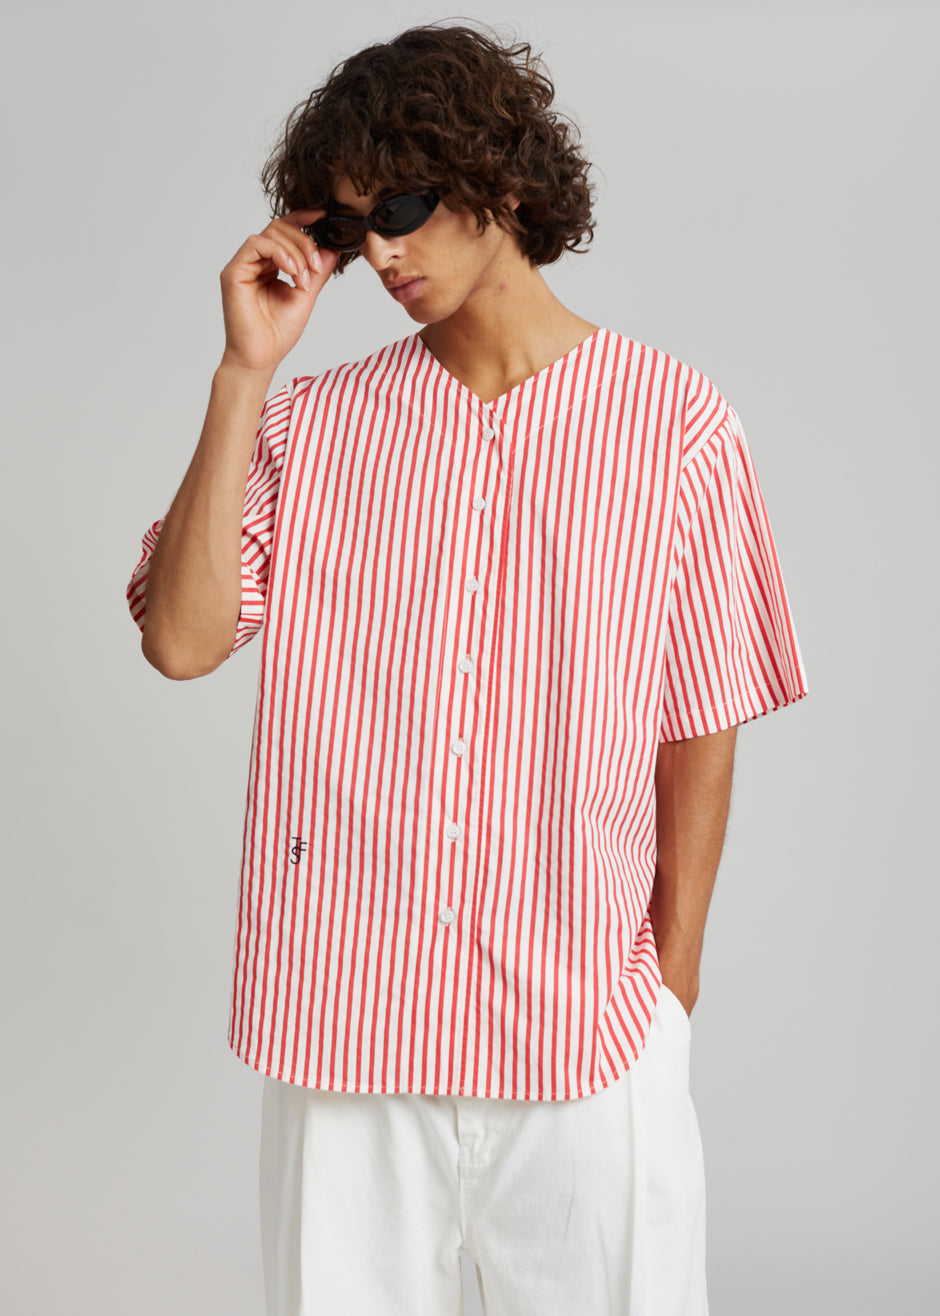 Tom Baseball Shirt - Red Stripe - 2